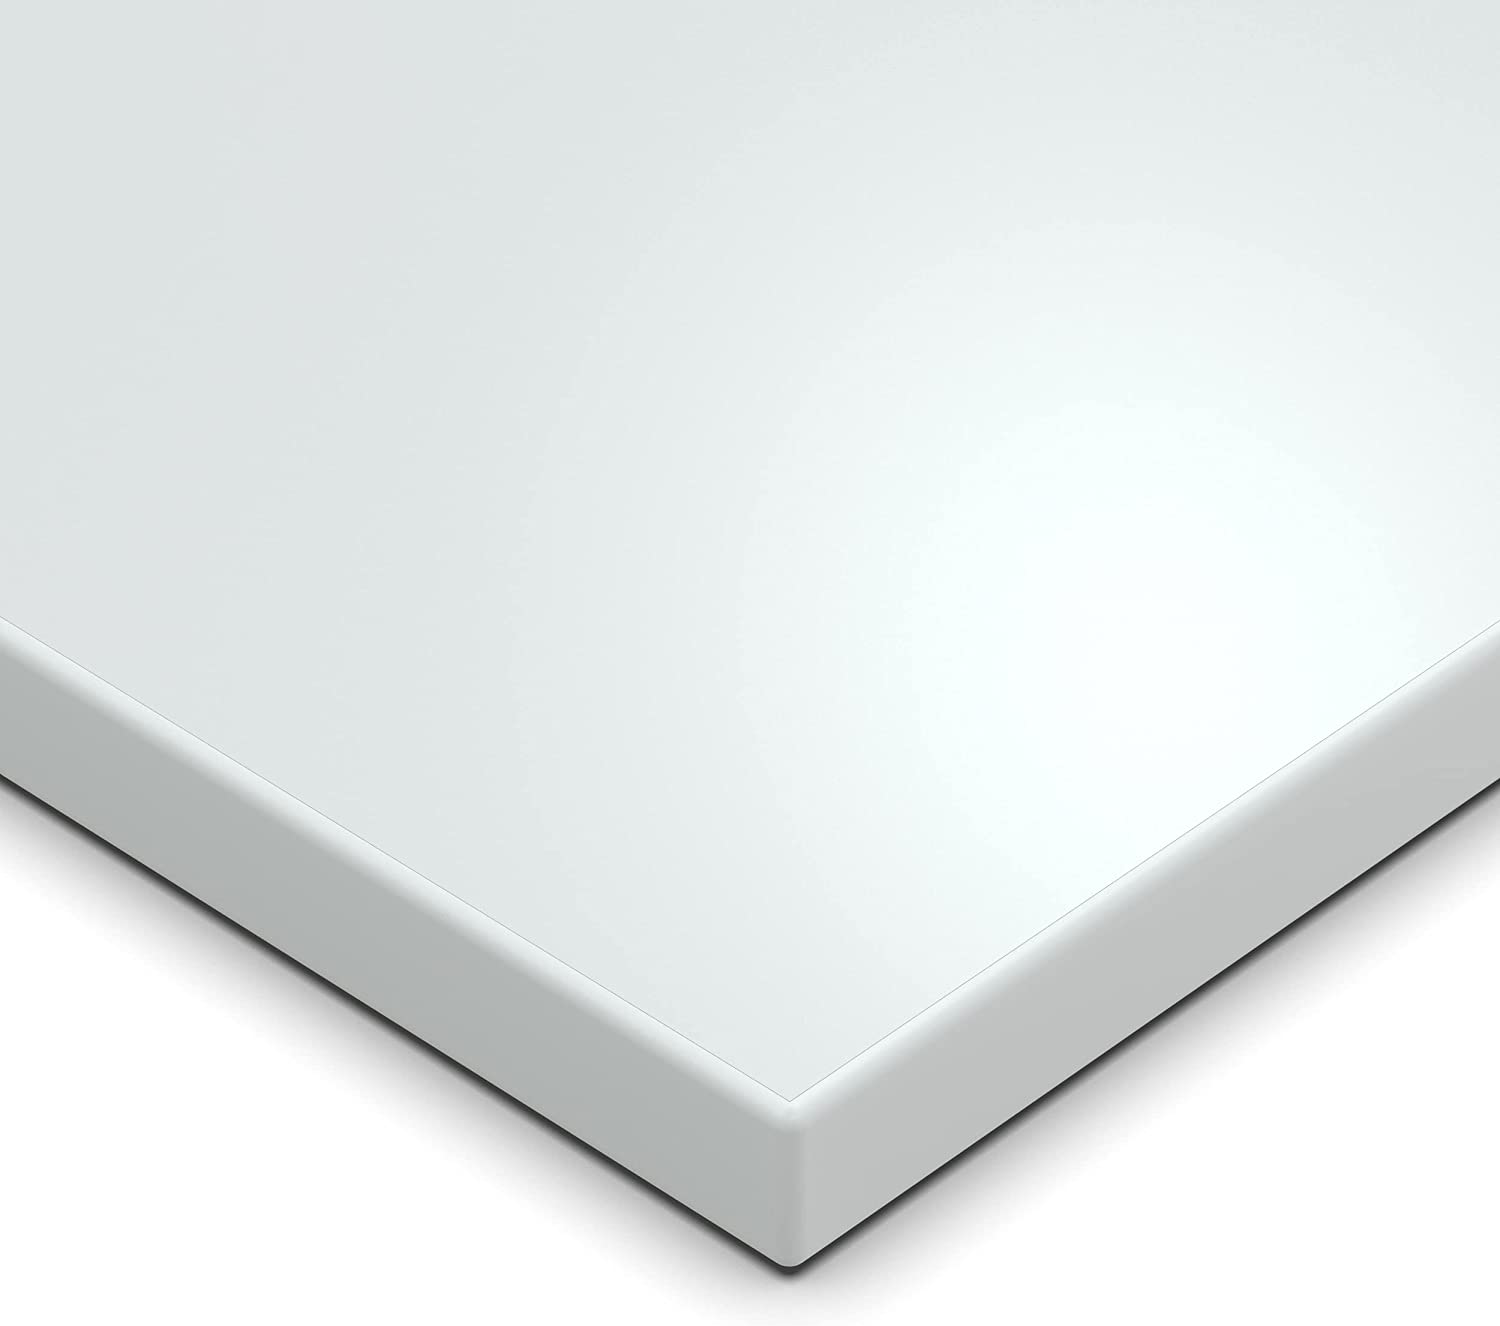 Geschirrspülerfront 715 x 444 mm, Weiss Frontblende Tür 19mm voll-, teilintegriert oder n. Maß - Tischlerware Qualität aus Deutschland Kopie